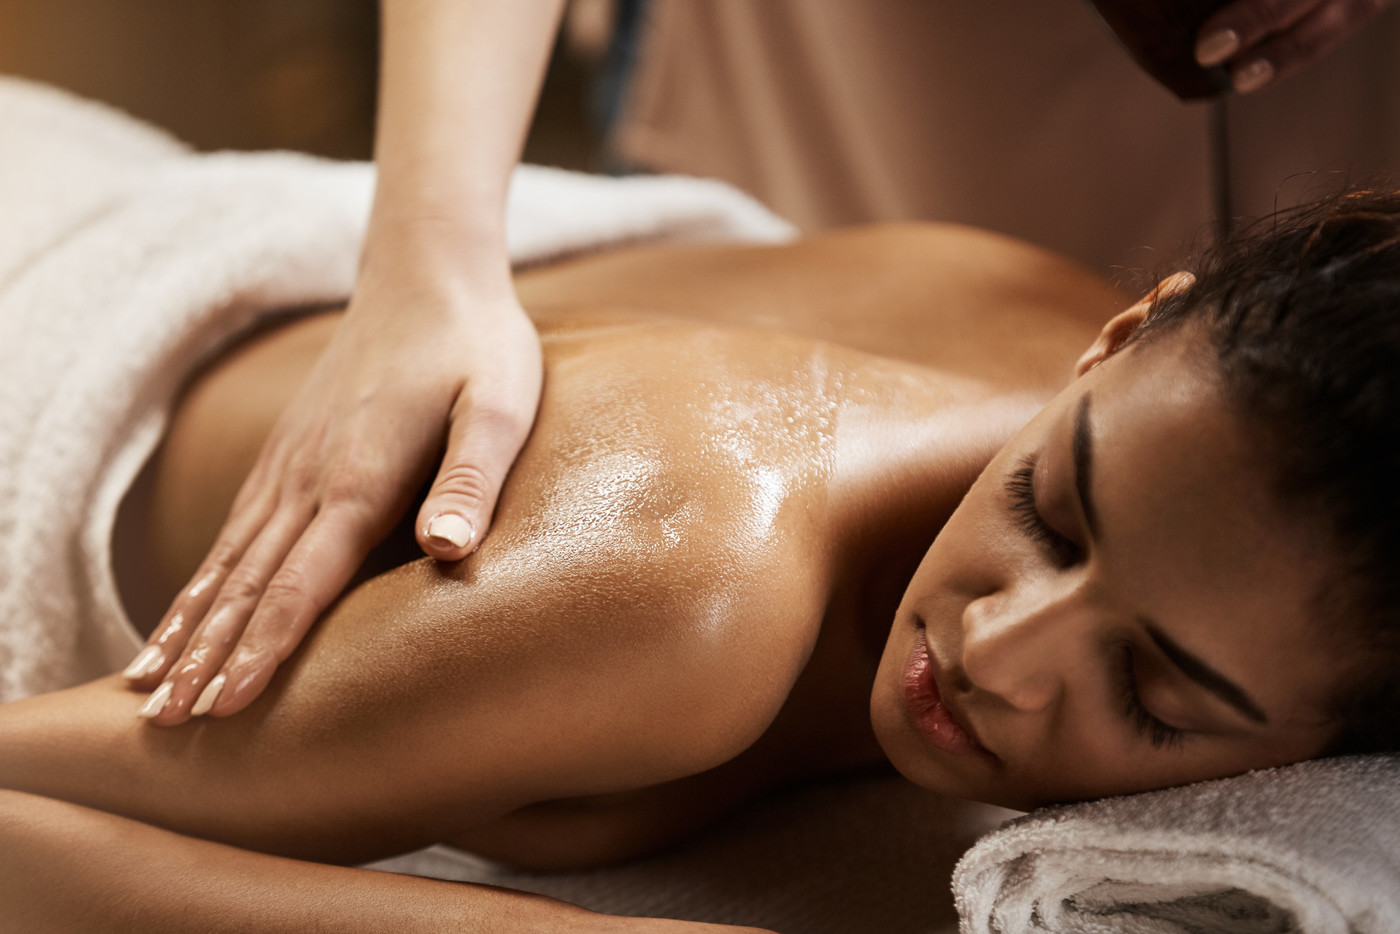 Wohltuend: Massagen sind besonders im Winter sehr erholsam und Immunsystem stärkend.